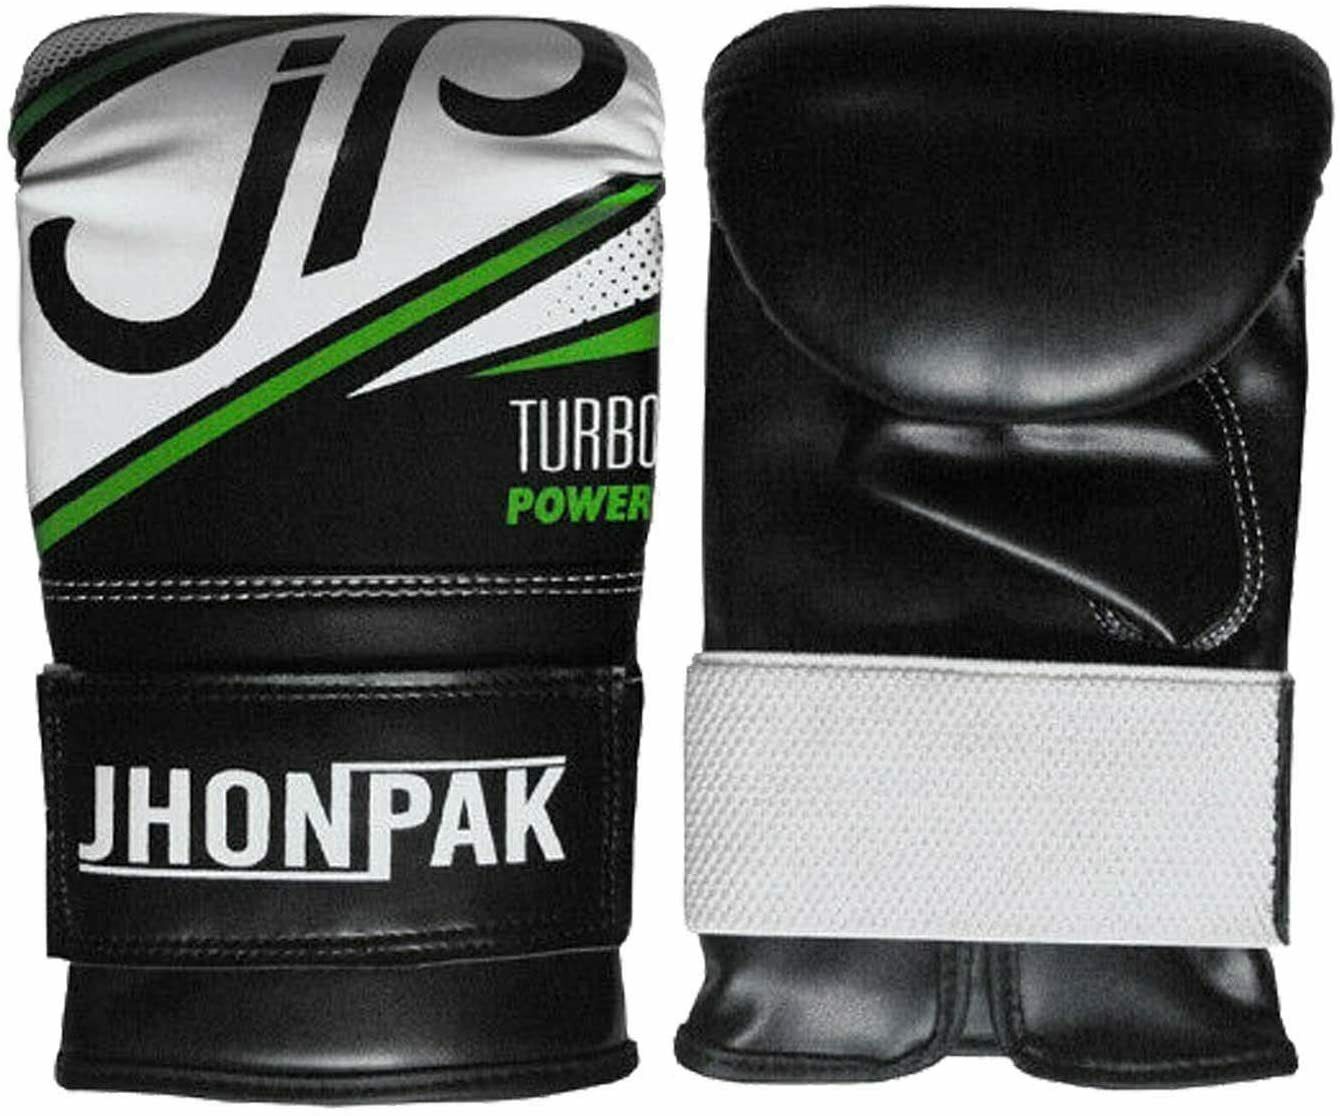 JP Heavy Punch Bag Unfilled Boxing Set Gloves